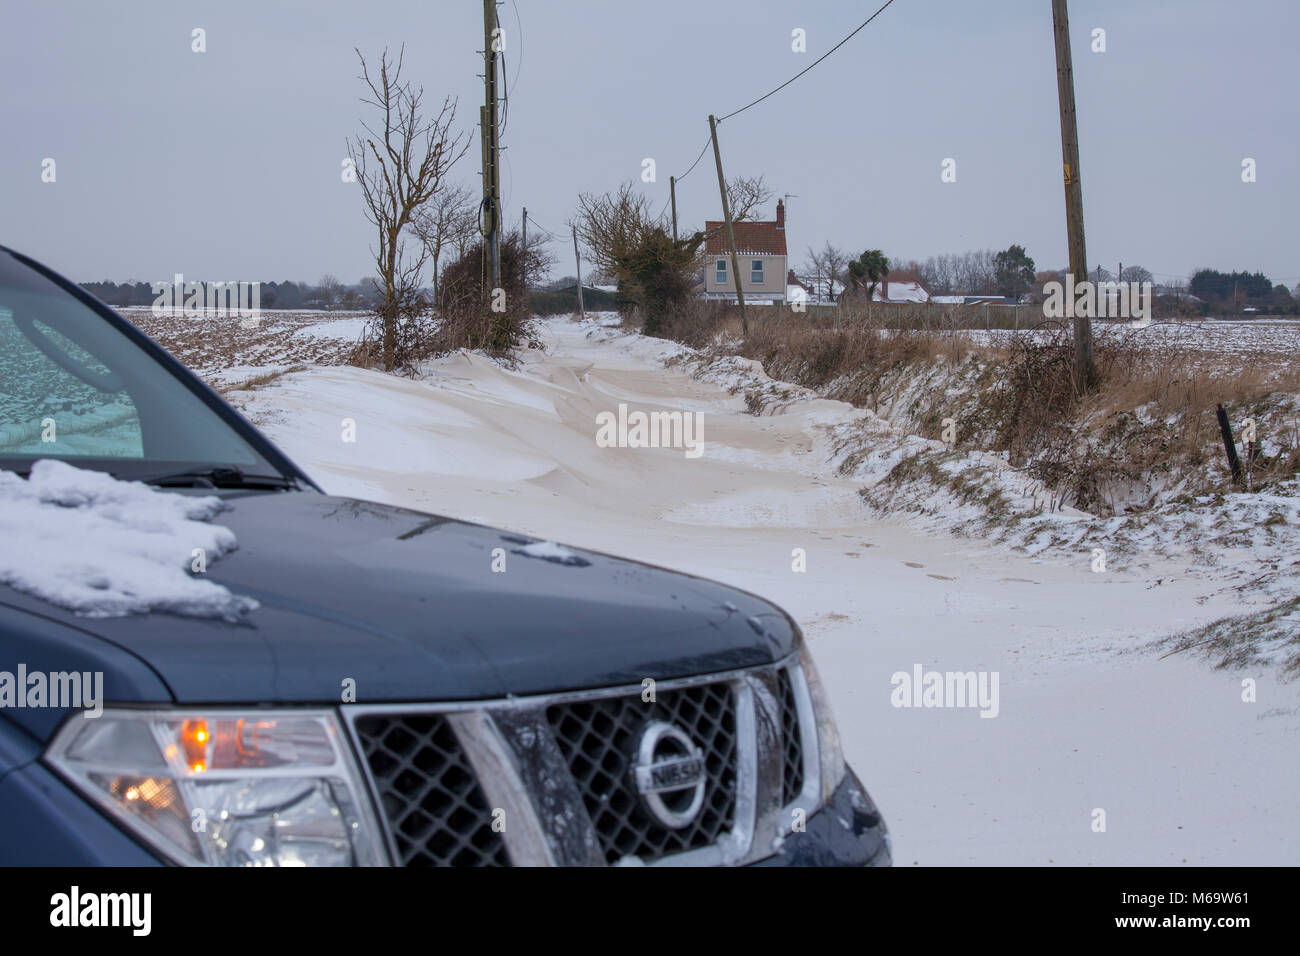 Happisburgh,Norfolk,UK. 1er mars 2018. Une route est bloquée sur toute sa longueur par des amoncellements de neige.Plusieurs cottages & maisons sont à gauche coupée par la neige, comme vu dans l'image. Ce n'est qu'une des nombreuses routes autour de la zone qui sont fermées par la neige ou par la police pour la sécurité publique. Une Nissan 4x4 est garé en face de la route bloquée. Crédit : Paul Lilley/Digitalshot/Alamy Live News Banque D'Images